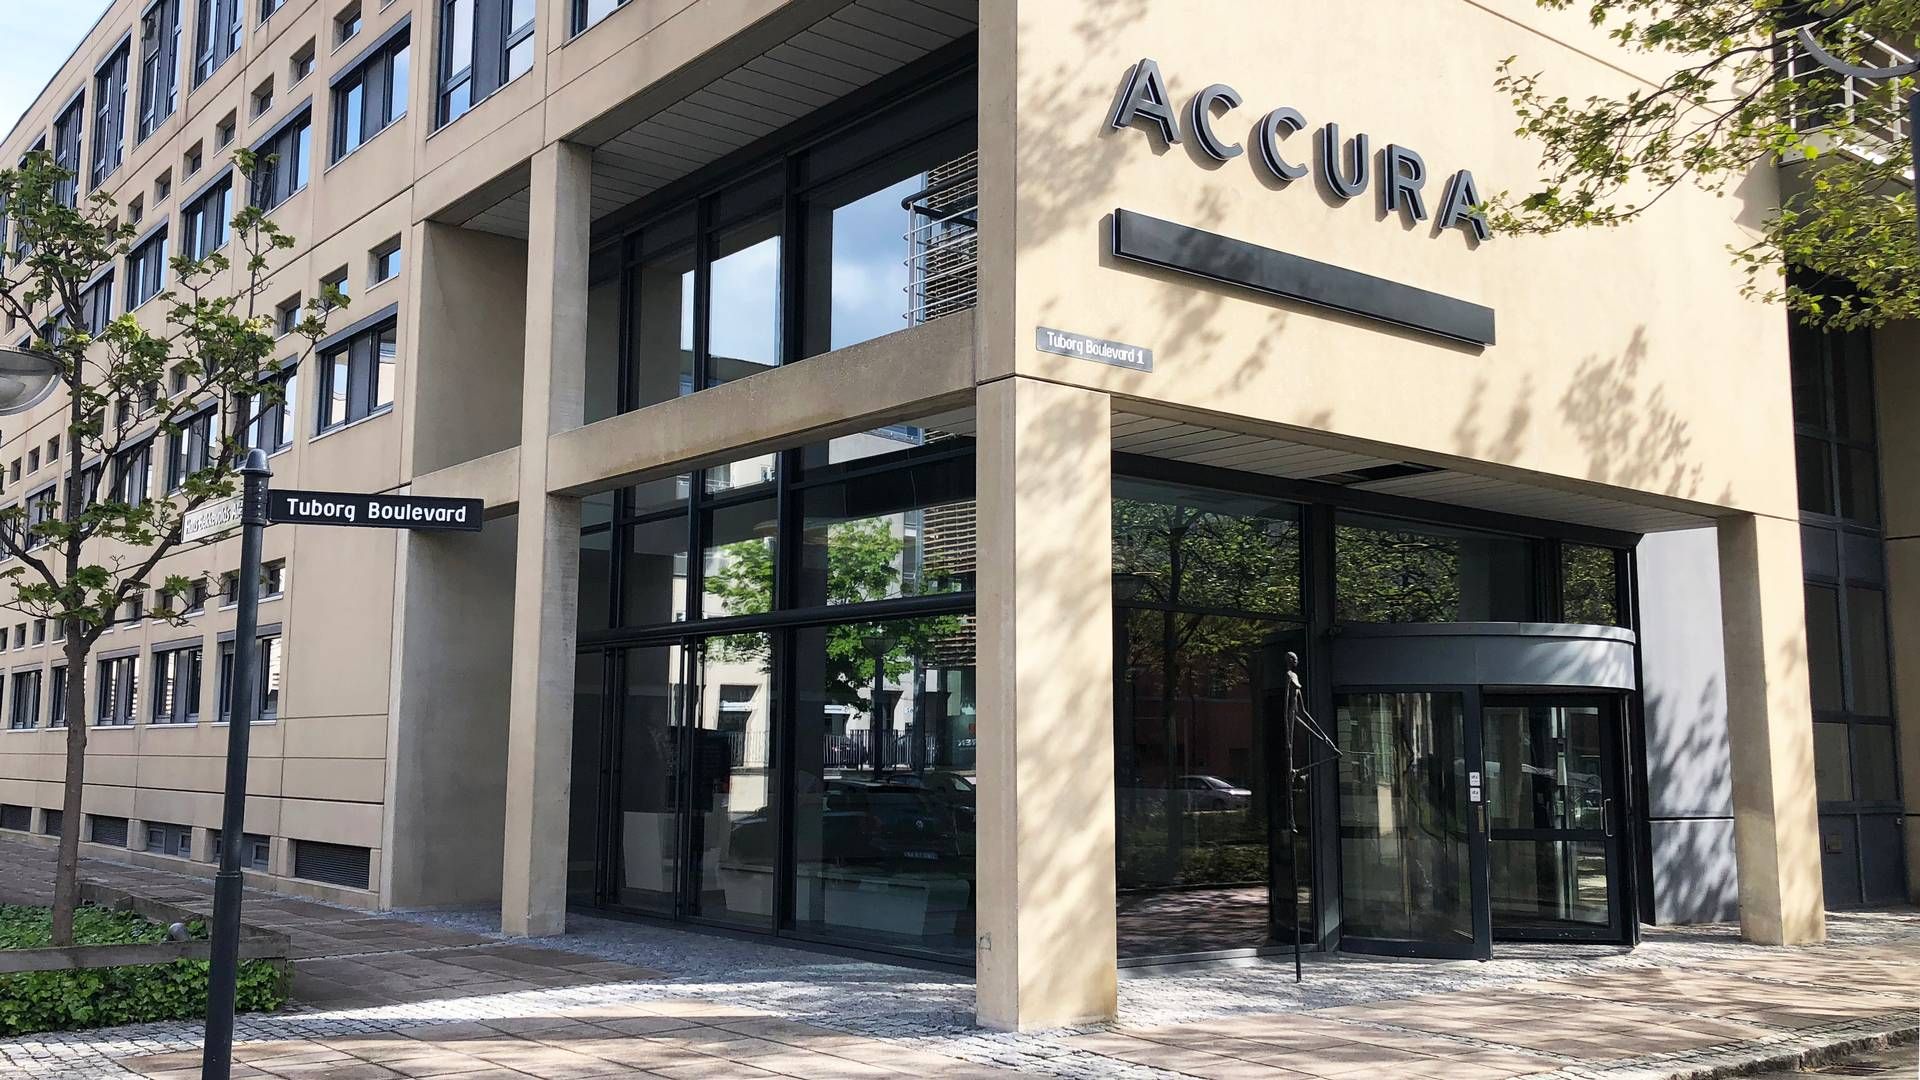 Fra første januar kan flere advokater glæde sig over nye titler hos Accura. | Foto: Accura / Pr